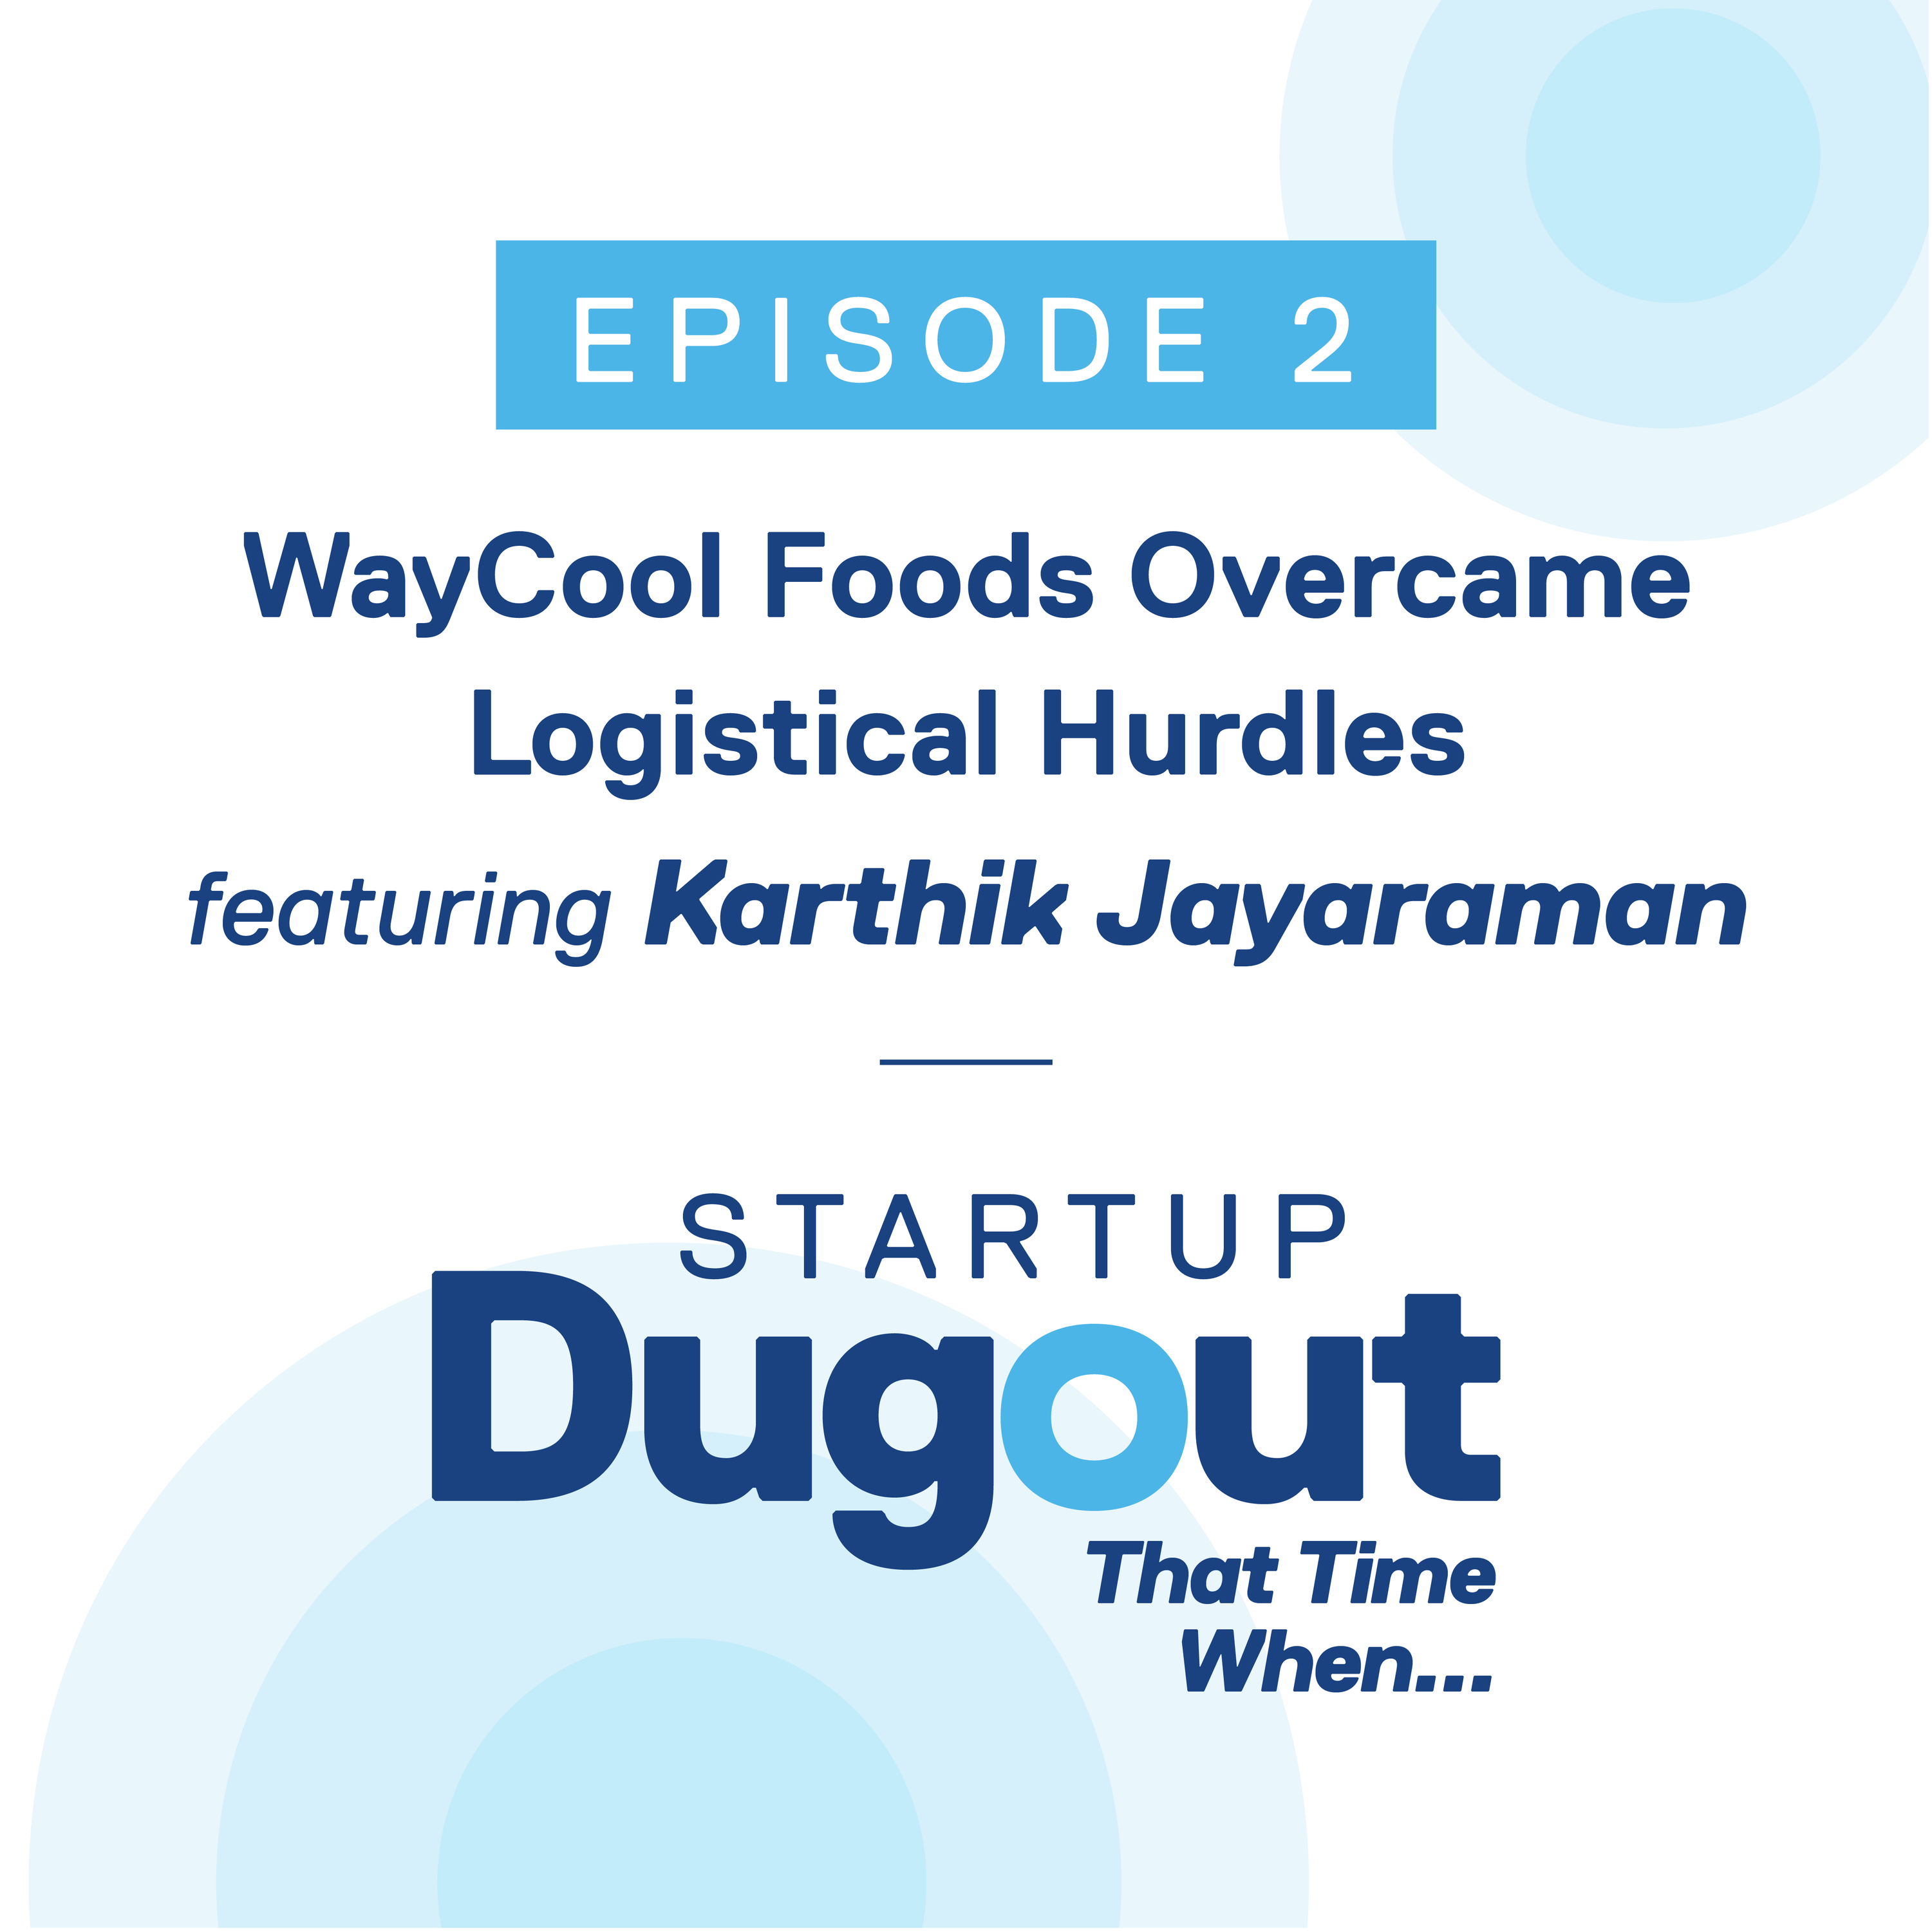 WayCool Foods overcame logistical hurdles ft. Karthik Jayaraman